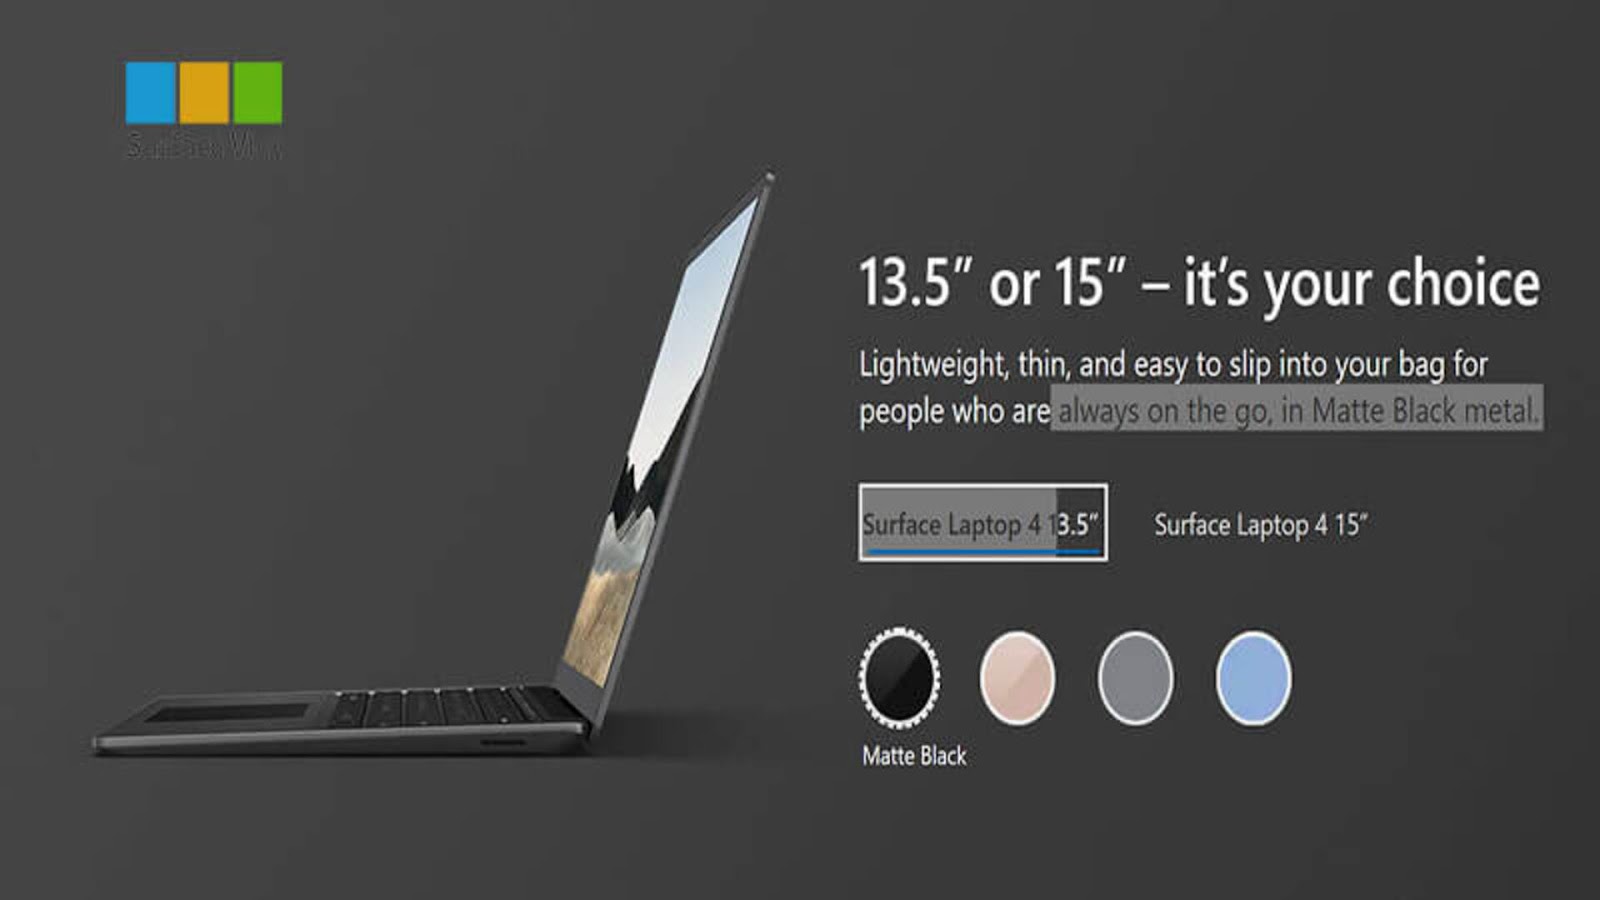 [Review] Đánh giá Surface Laptop 4 - Sau 2 năm ra mắt liệu có còn đáng mua? 2